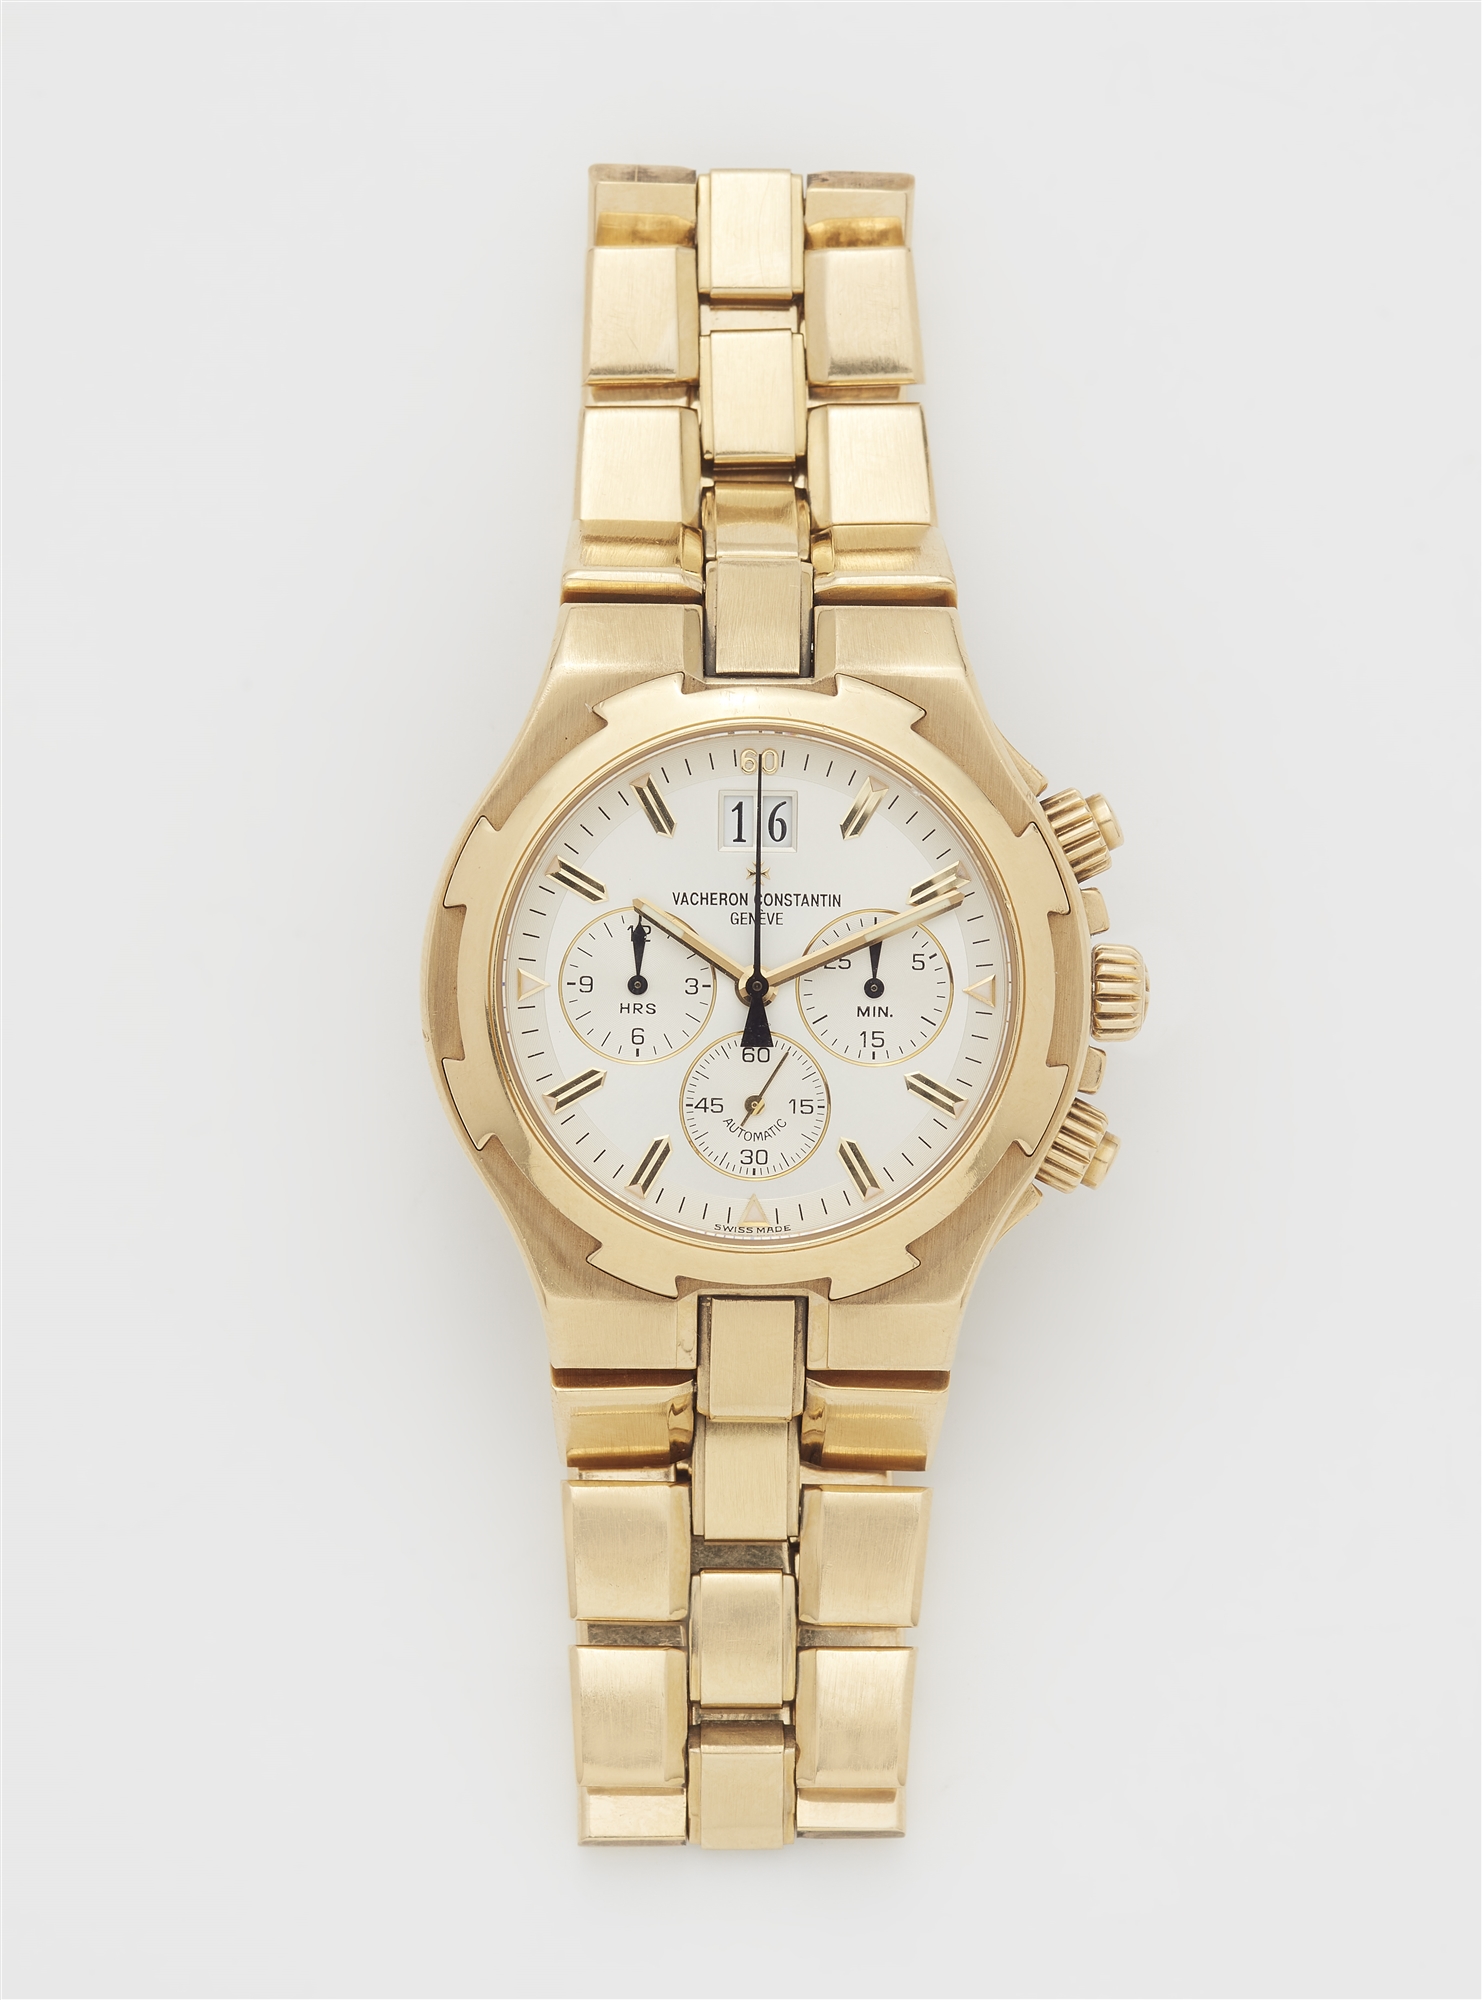 An 18k yellow gold Vacheron Constantin chronograph gentleman's wristwatch.